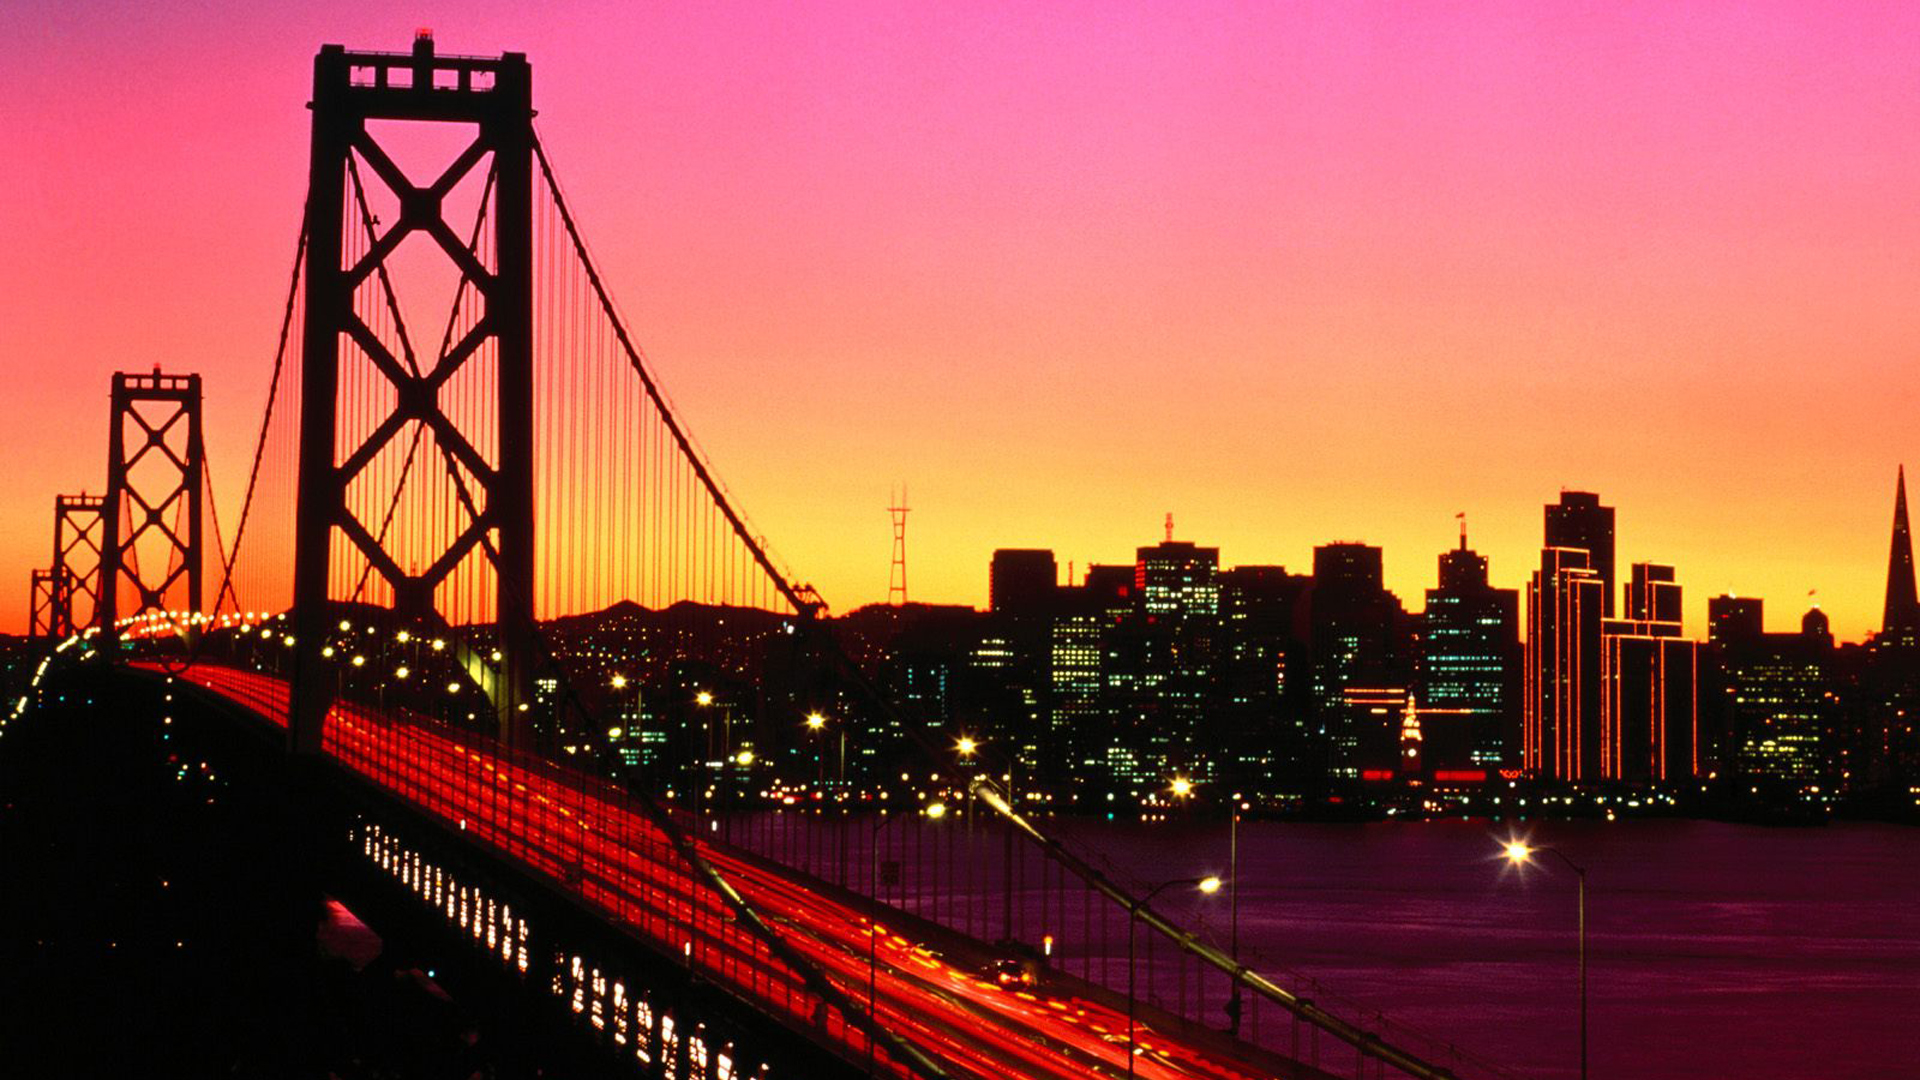 sunset, cityscapes, bridges, buildings, San Francisco, long exposure - desktop wallpaper